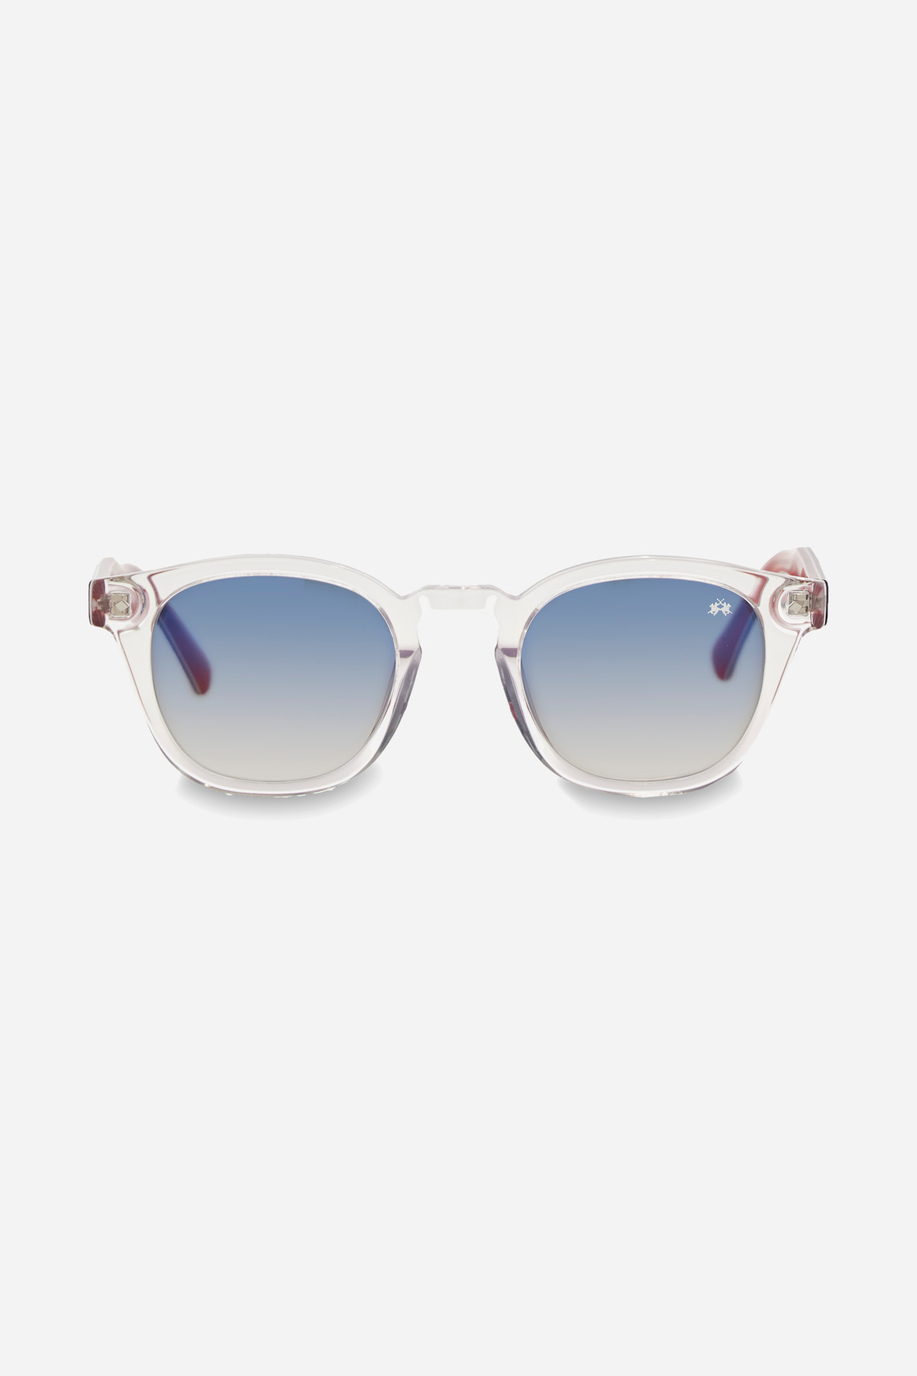 Sonnenbrille Modell pantos - Brille | La Martina - Official Online Shop